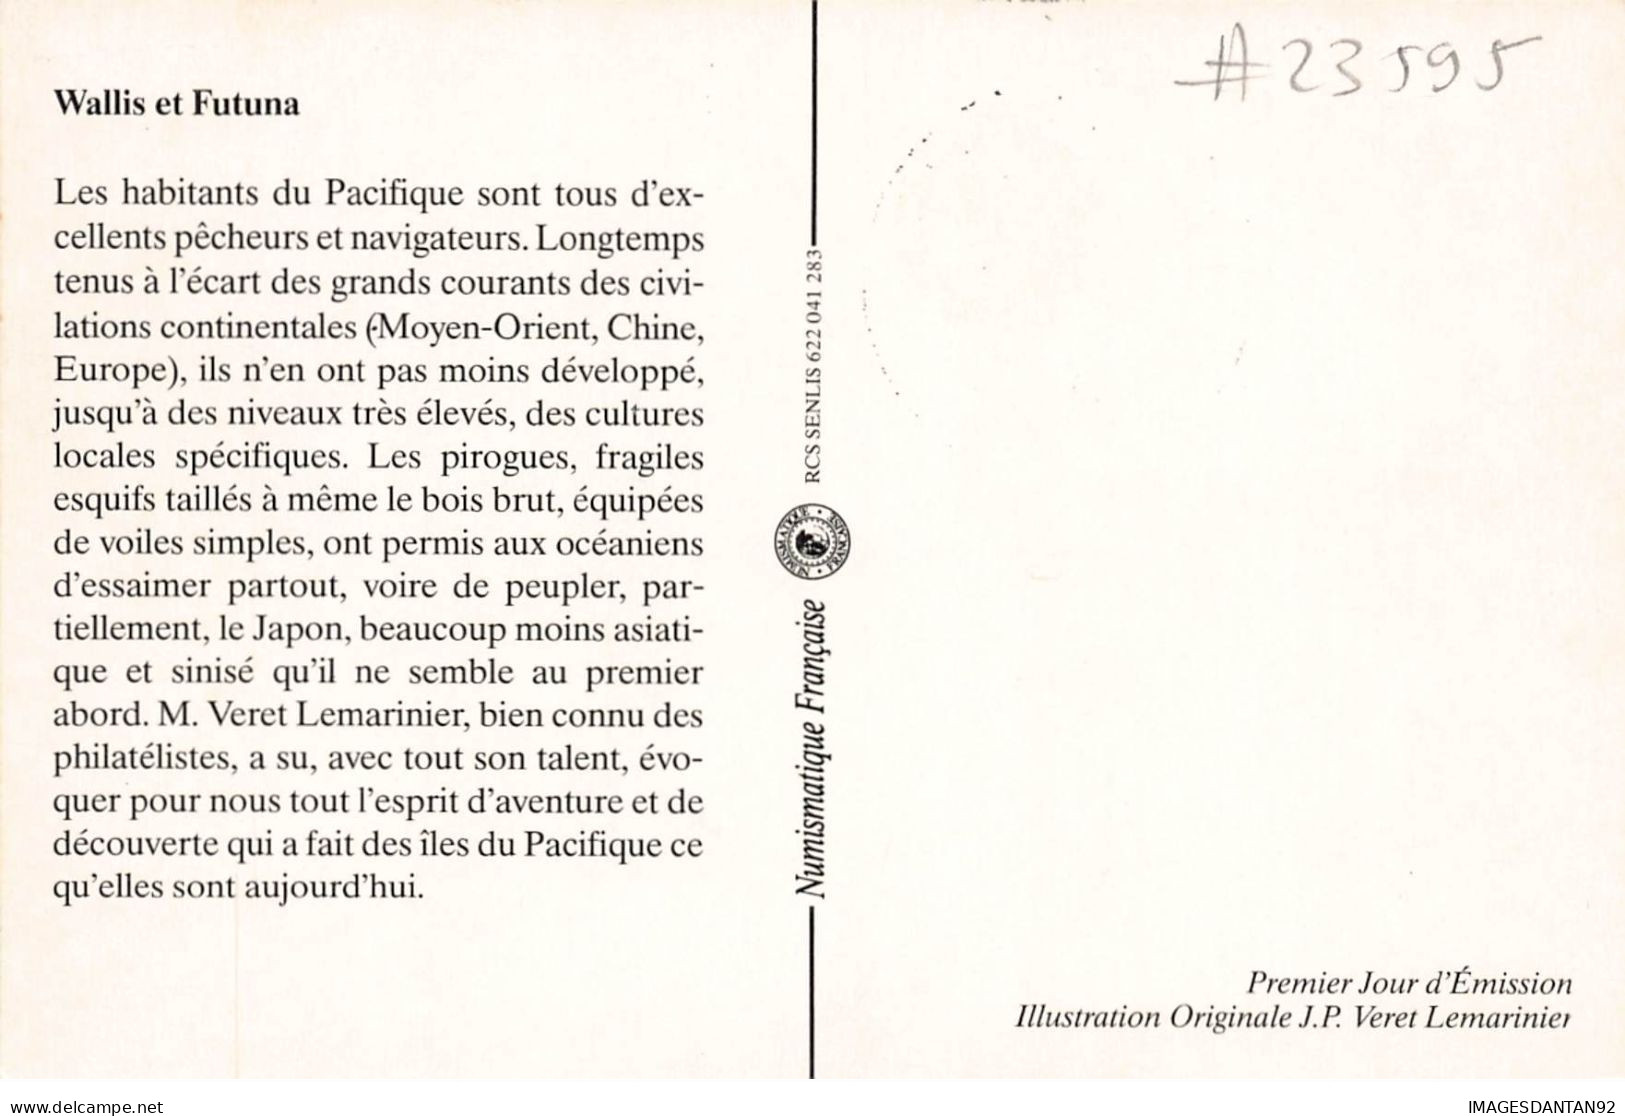 CARTE MAXIMUM #23595 WALLIS ET FUTUNA MATA UTU 1990 PIROGUE WALLISIENNE - Maximum Cards